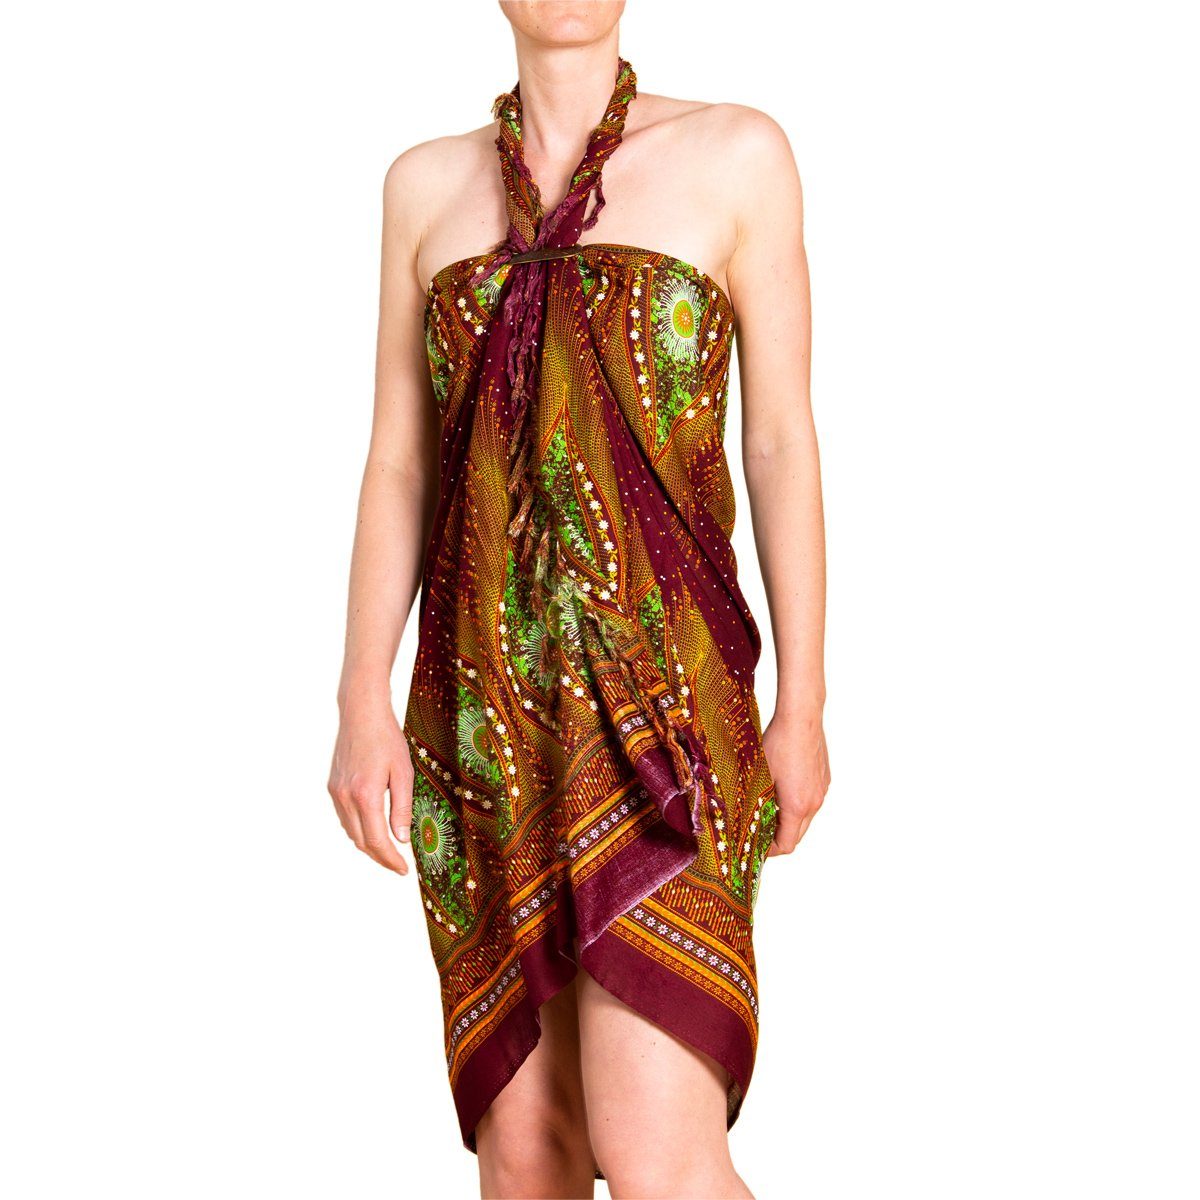 Schultertuch Sarong Cover-up den Pareo hochwertiger Tuch Peacock Halstuch aus Bikini Viskose Design PANASIAM für V Strand Wrap, 16 Strandkleid Strandtuch